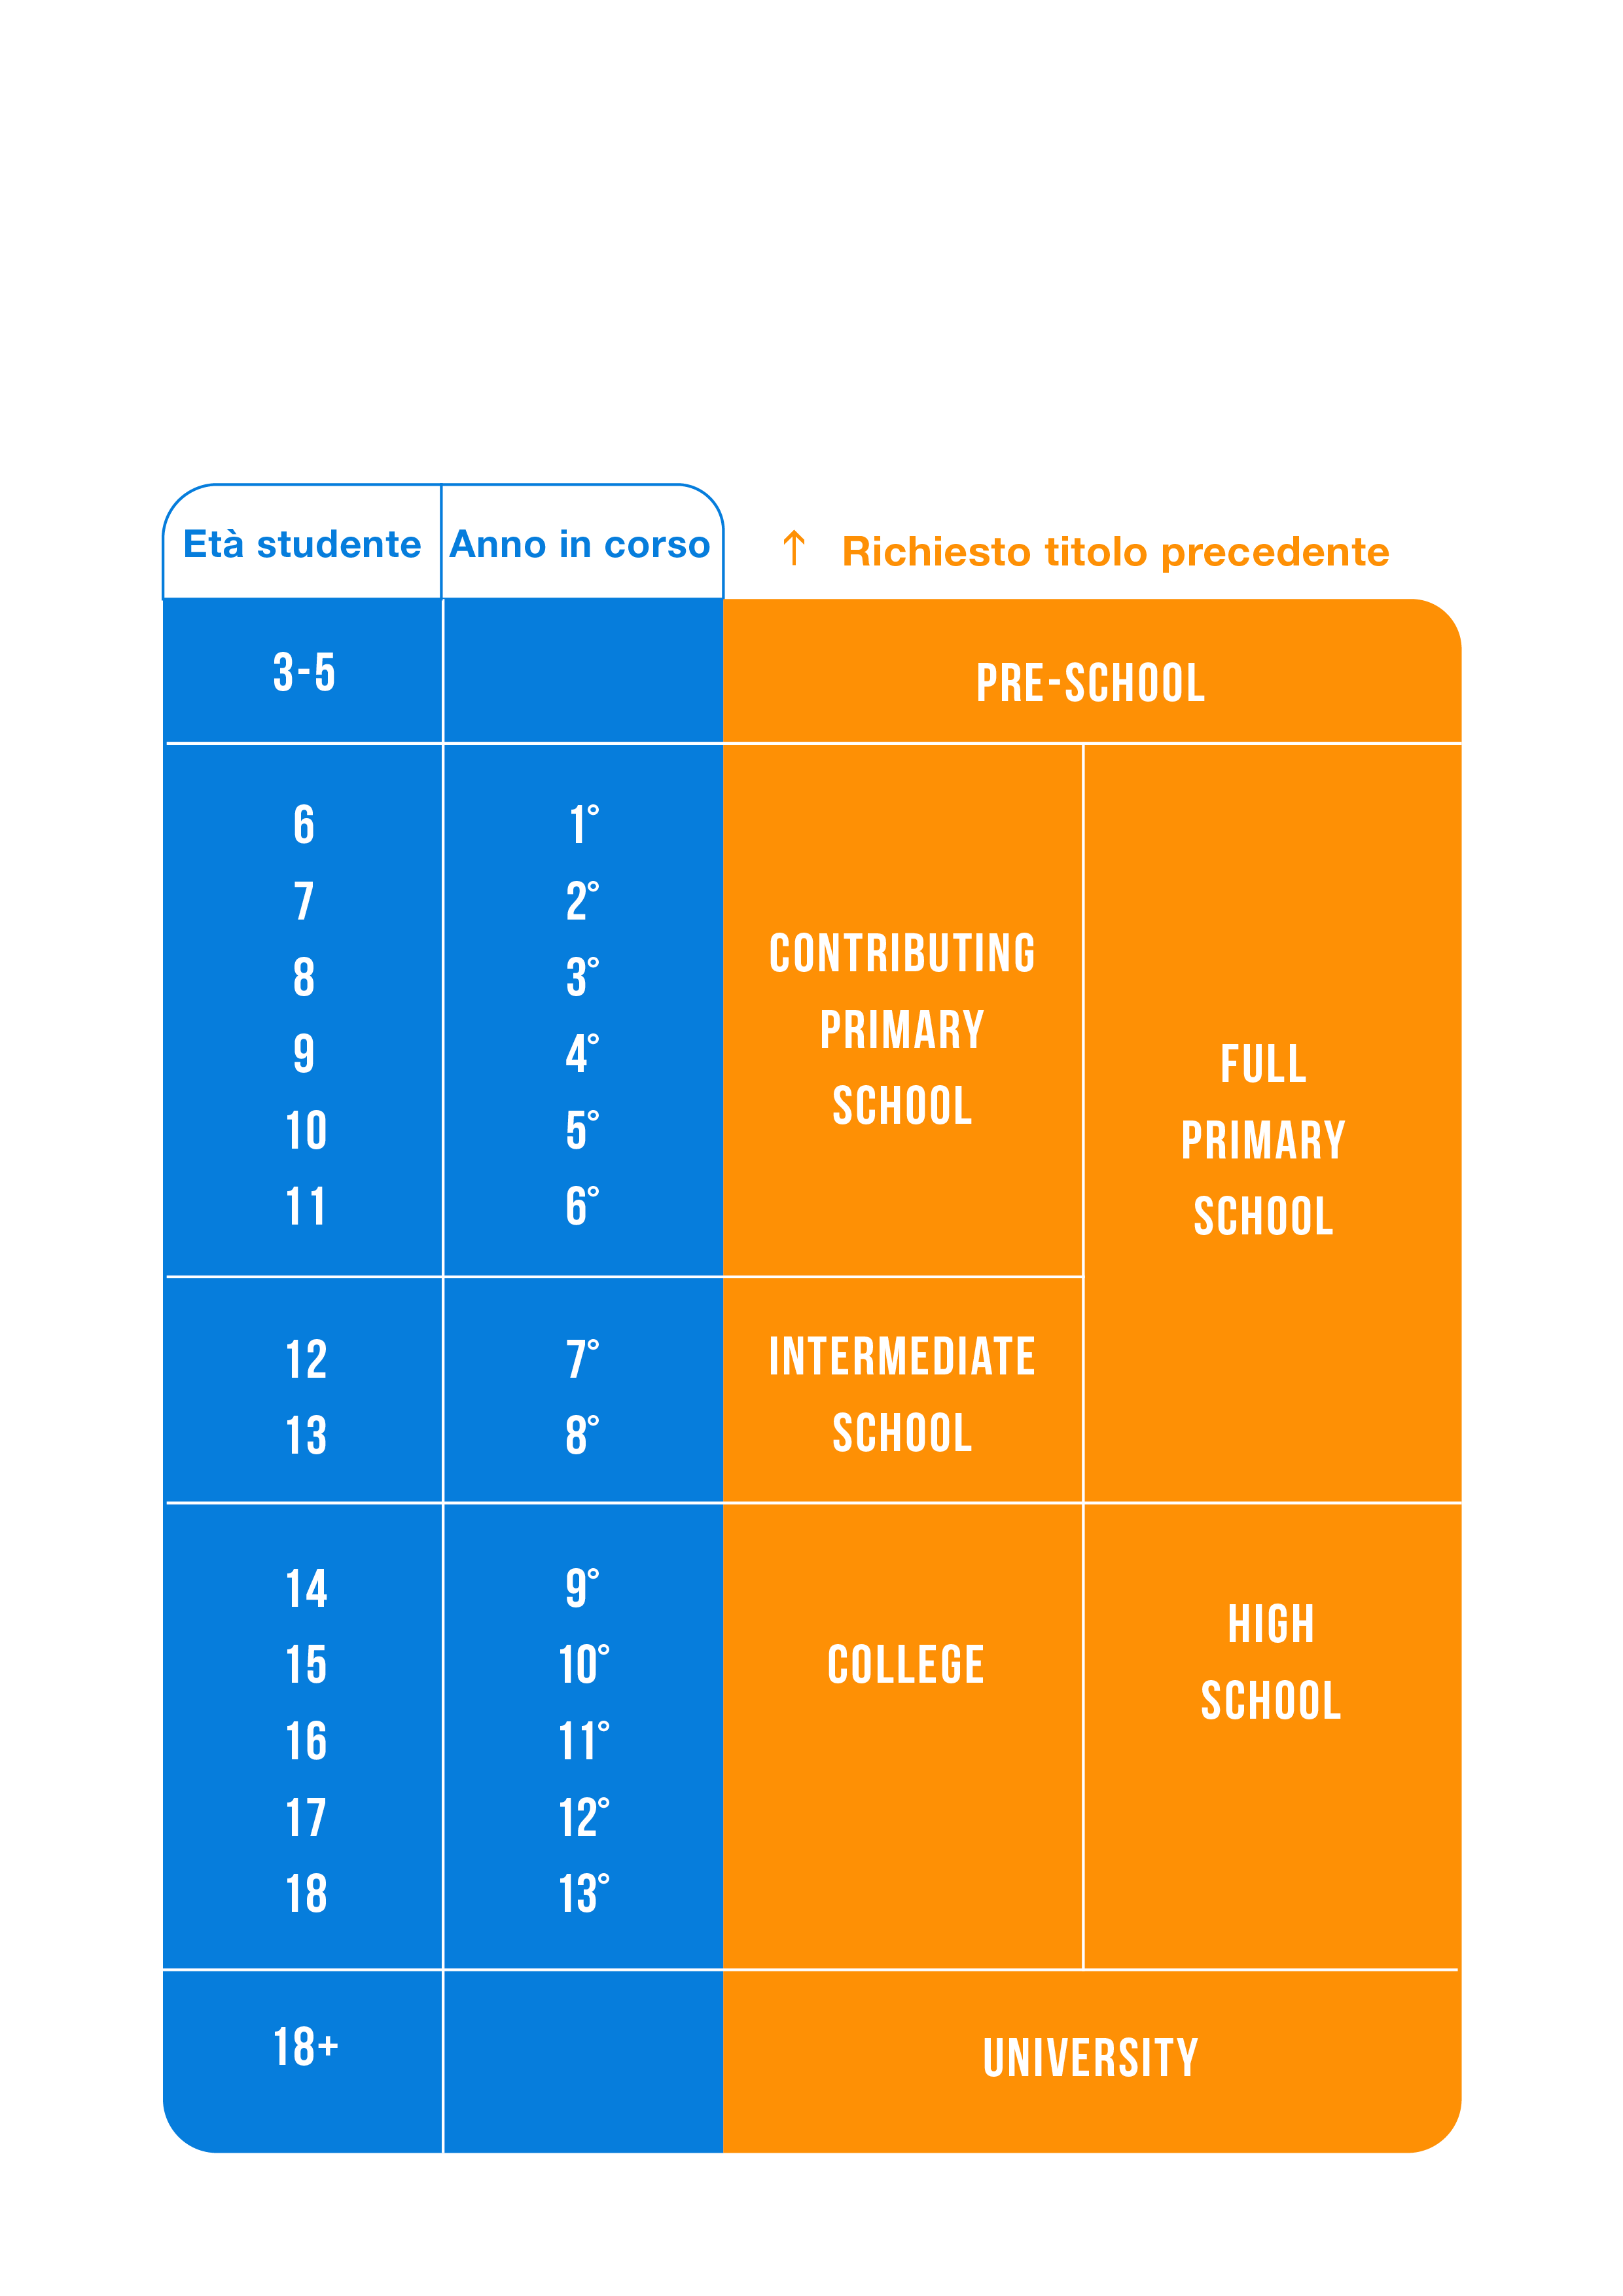 Grafico che rappresenta gli anni di frequenza, le età degli studenti e il tipo di scuola previsto dal sistema scolastico neozelandese